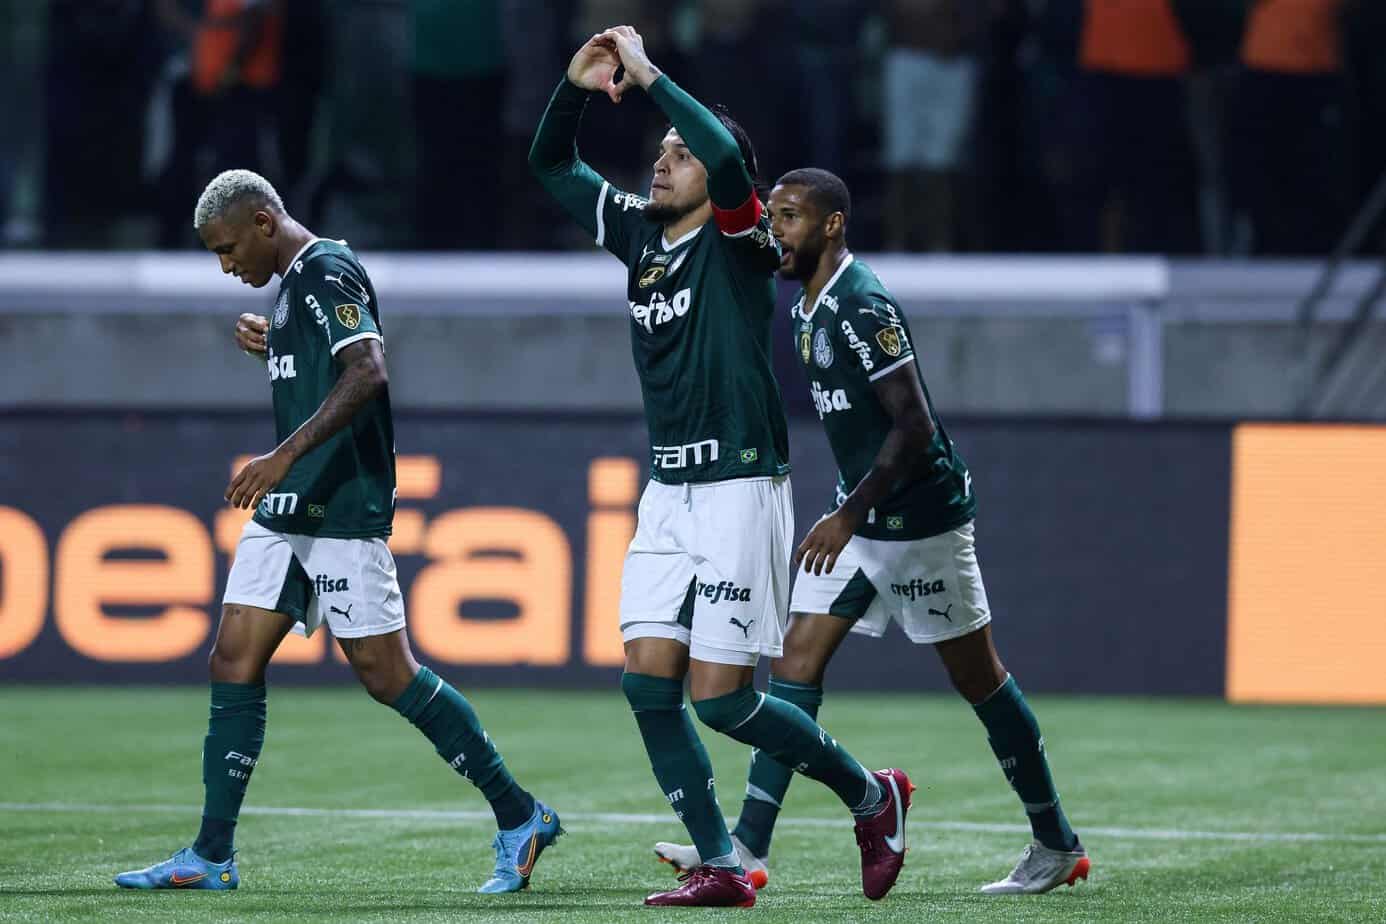 América-MG vs. Palmeiras Preview and Betting Odds